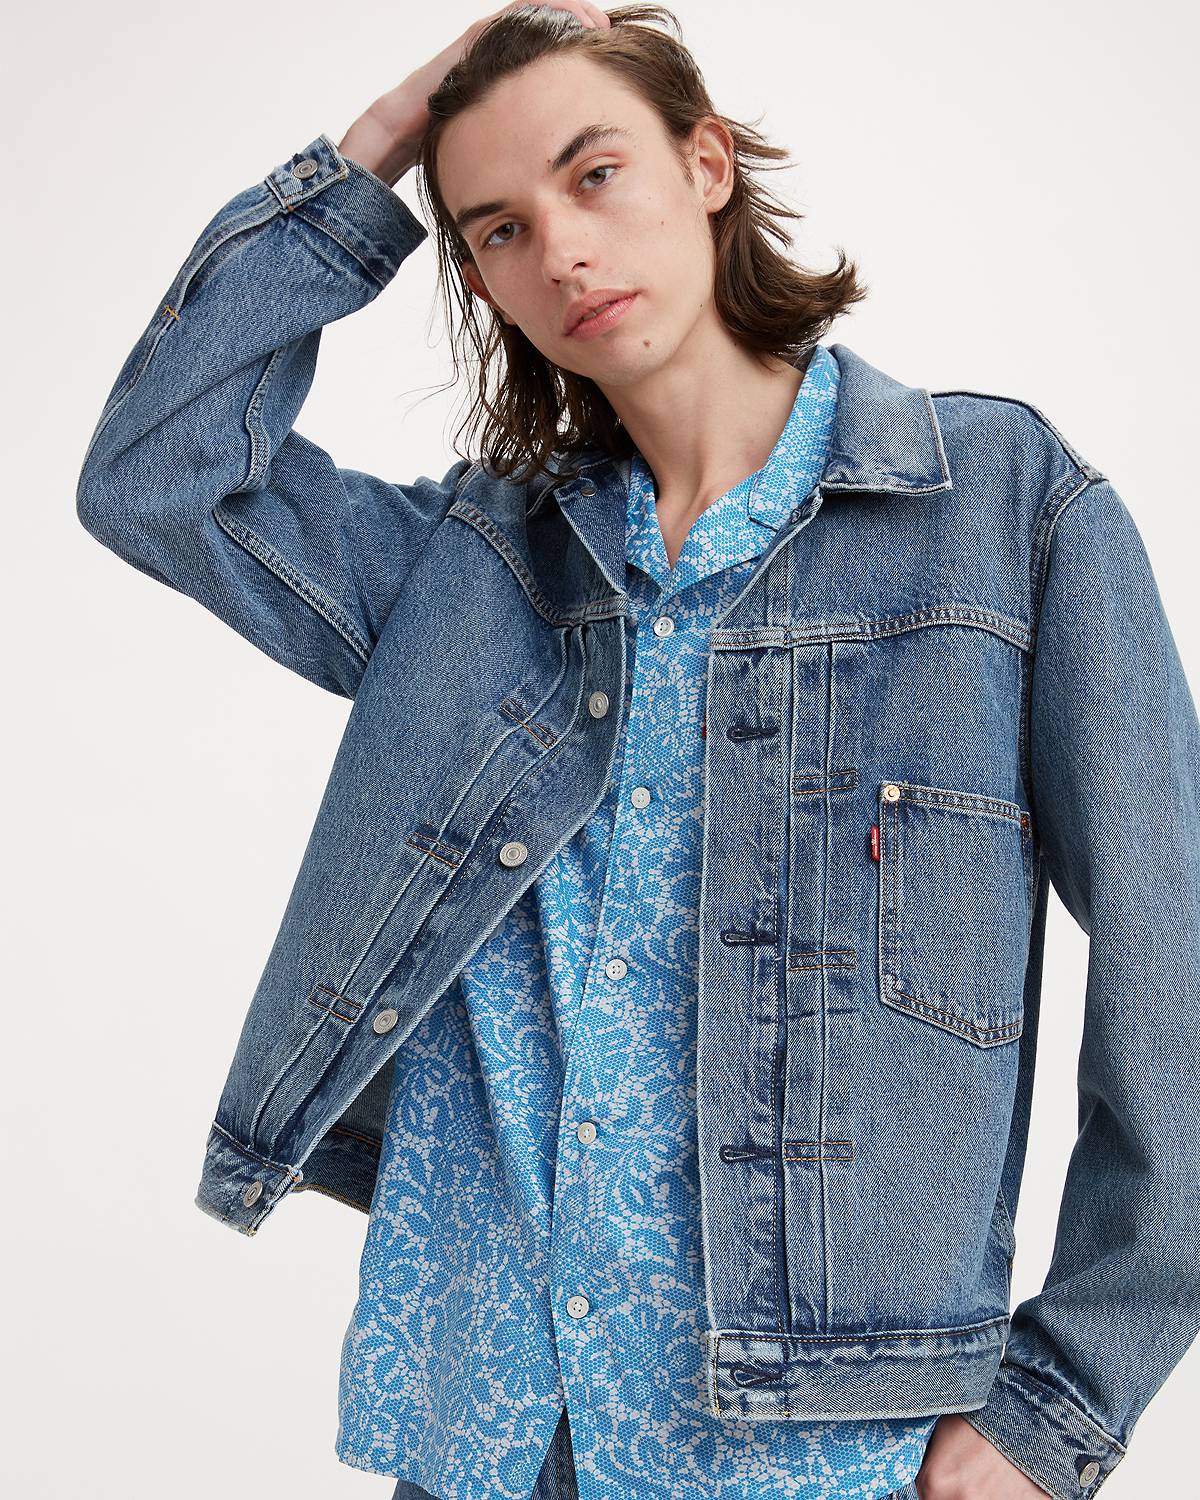 Model wearing jean jacket